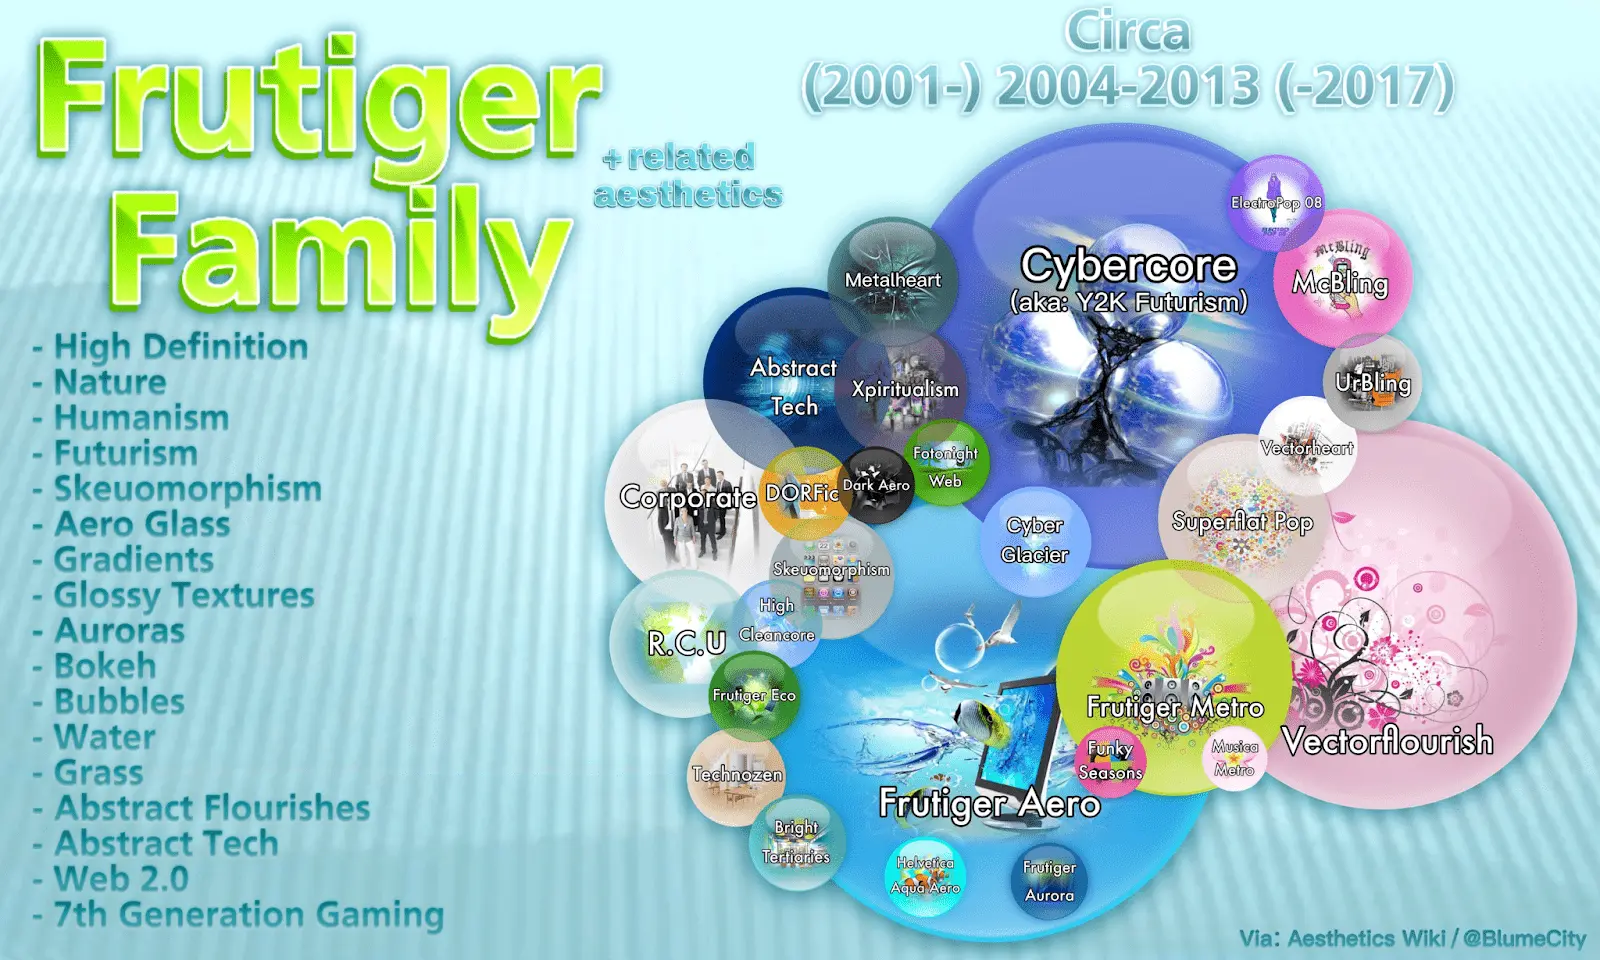 Diagramme montrant les différents sous-genres et esthétiques connexes au sein de la famille Frutiger